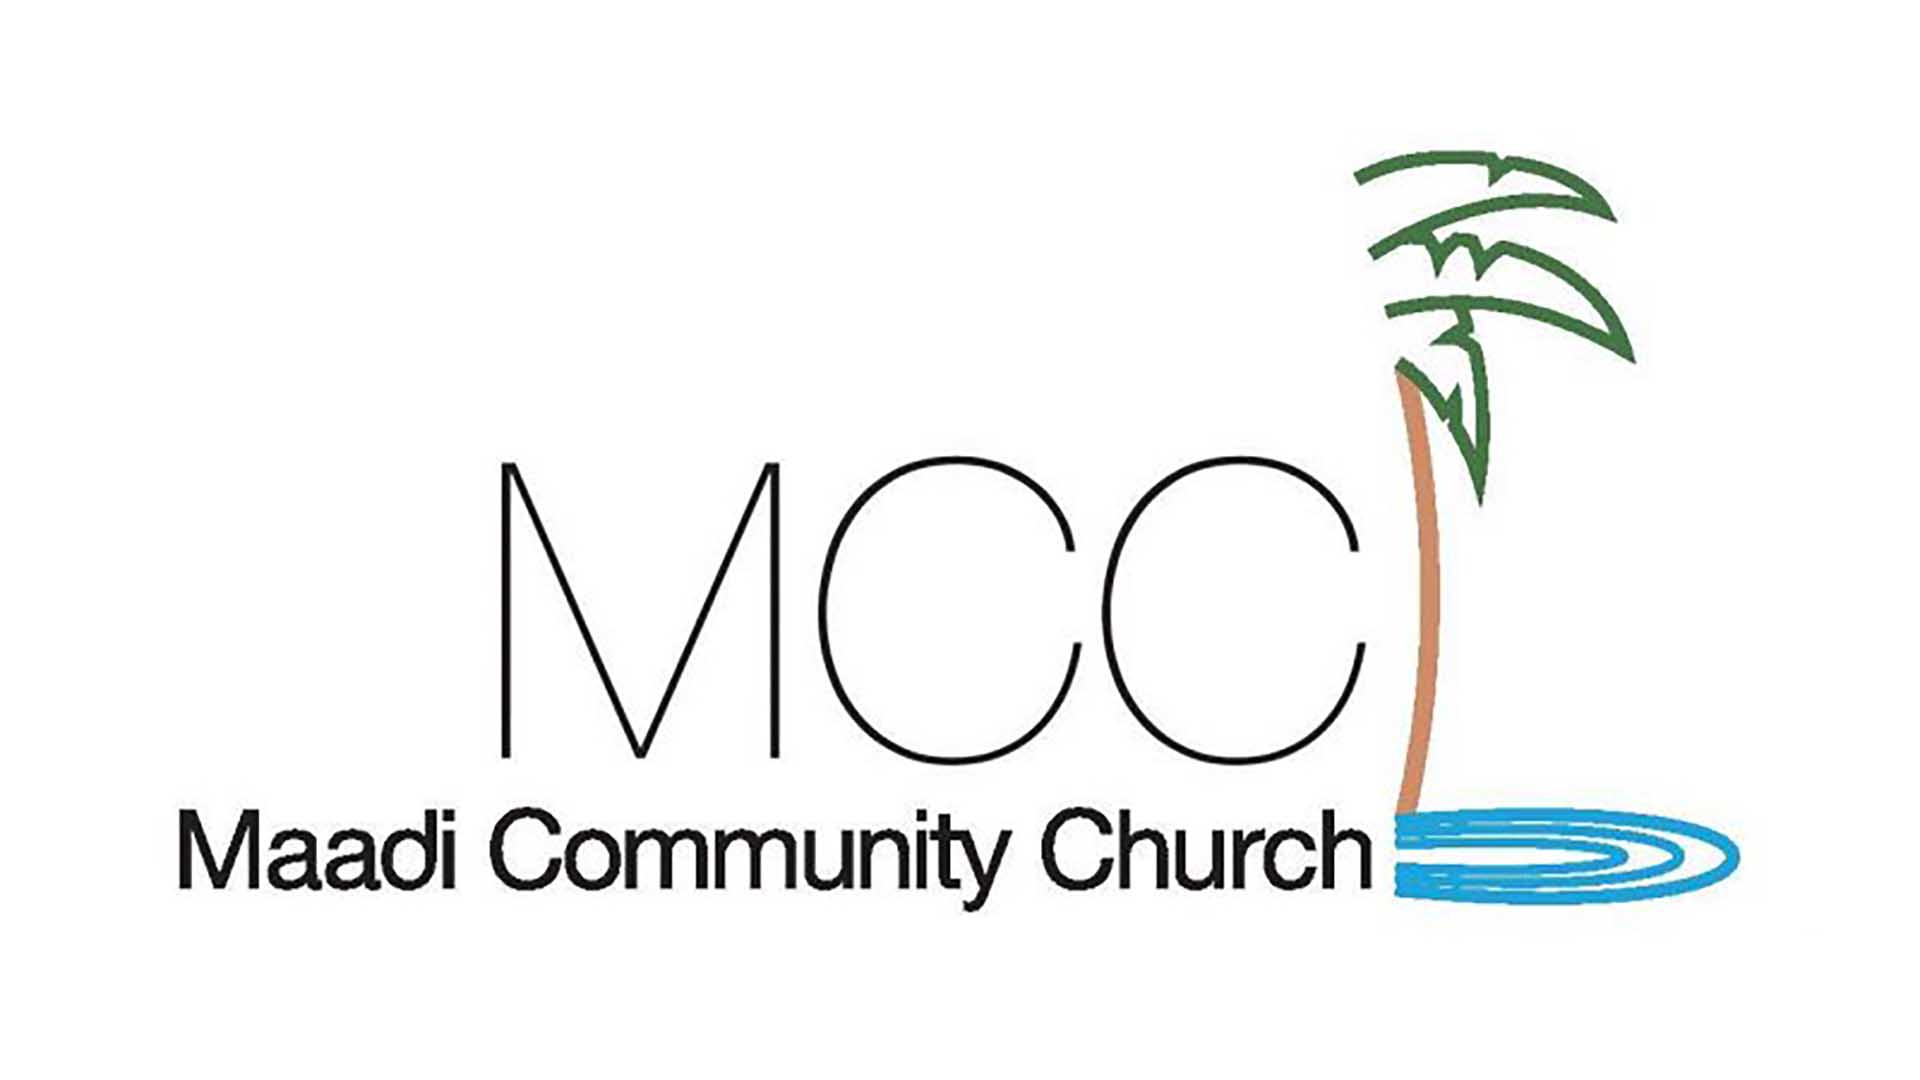 Maadi Community Church logo